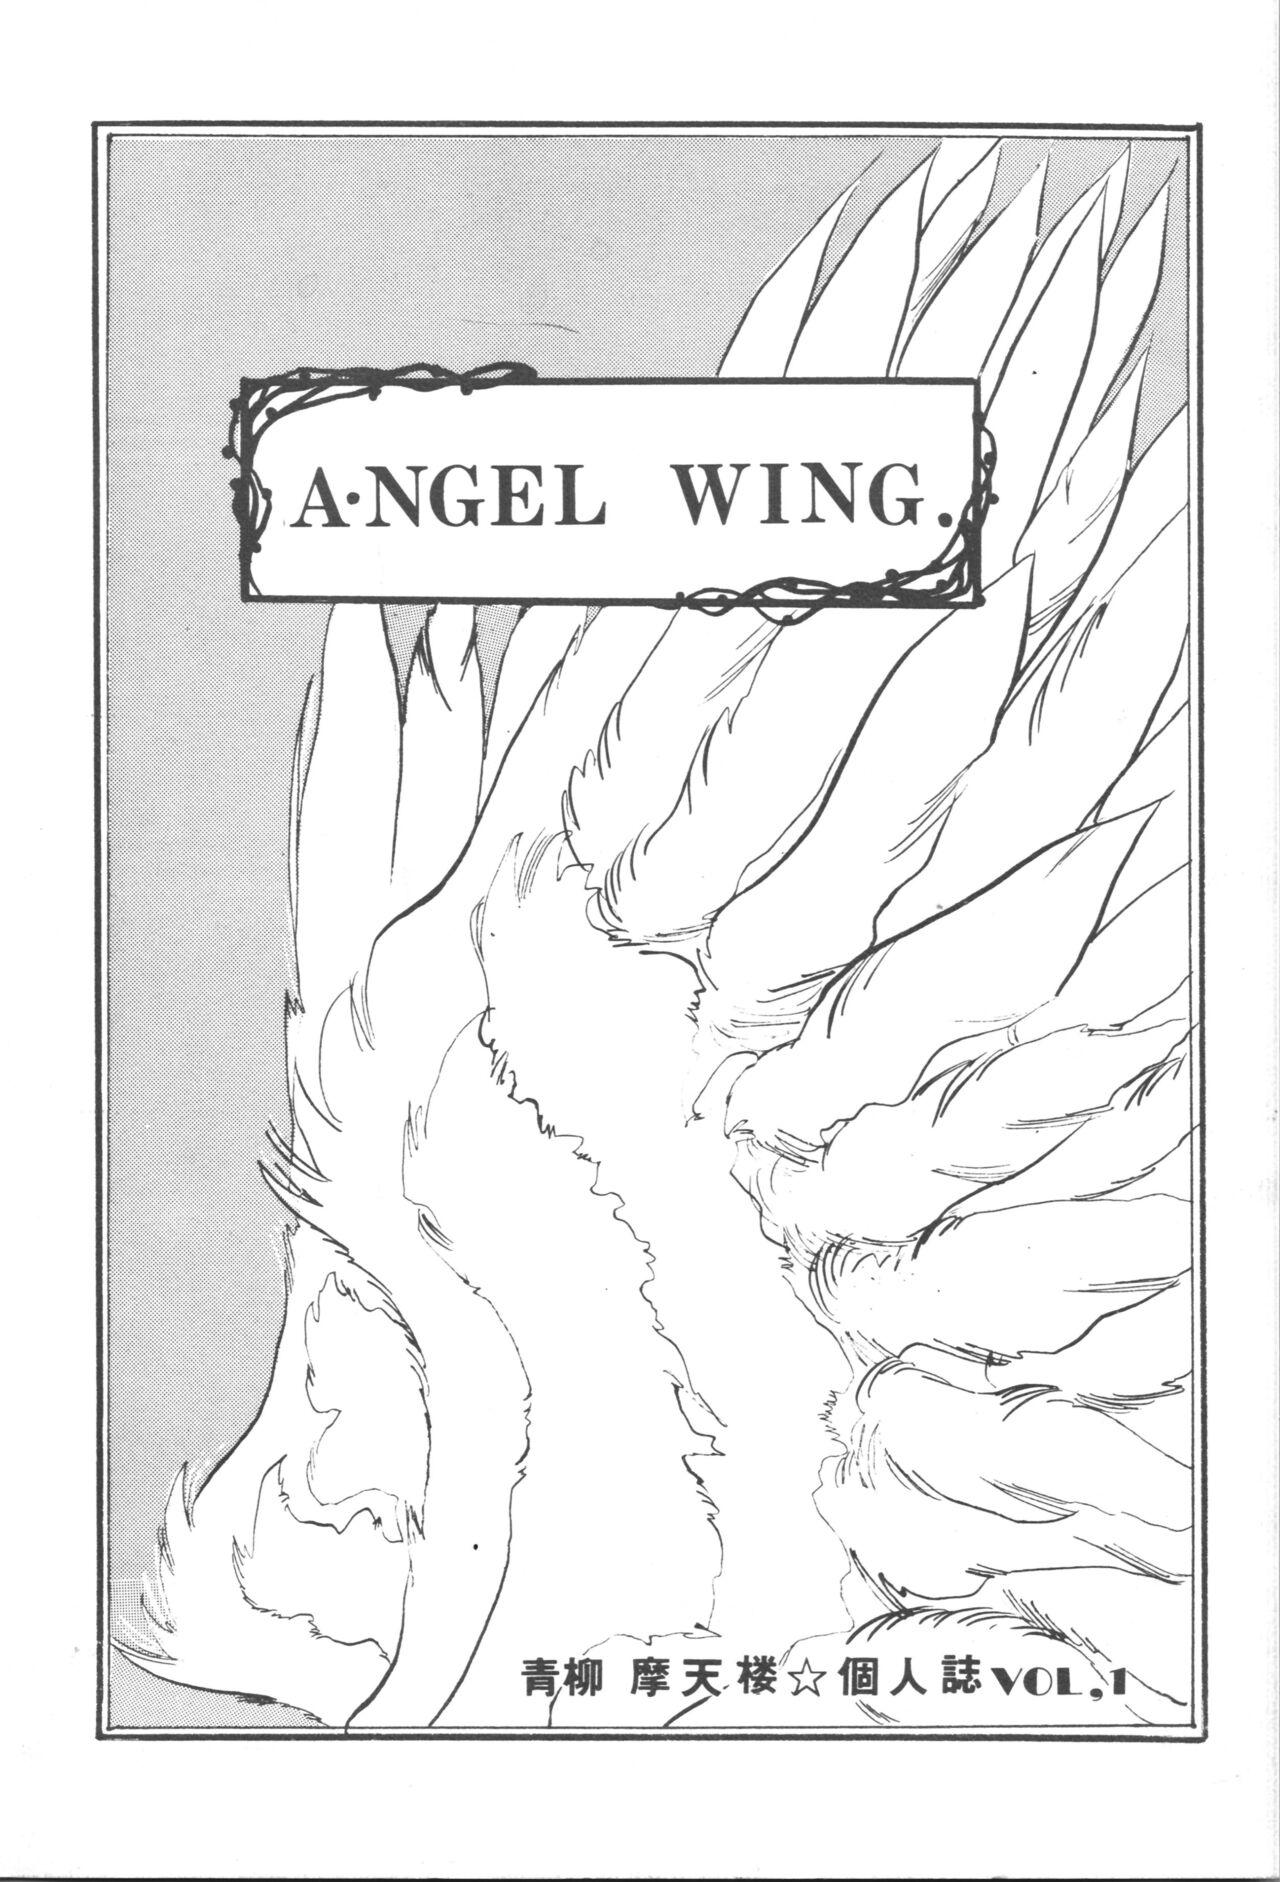 ANGEL WING. / Aoyagi Skyscraper 0